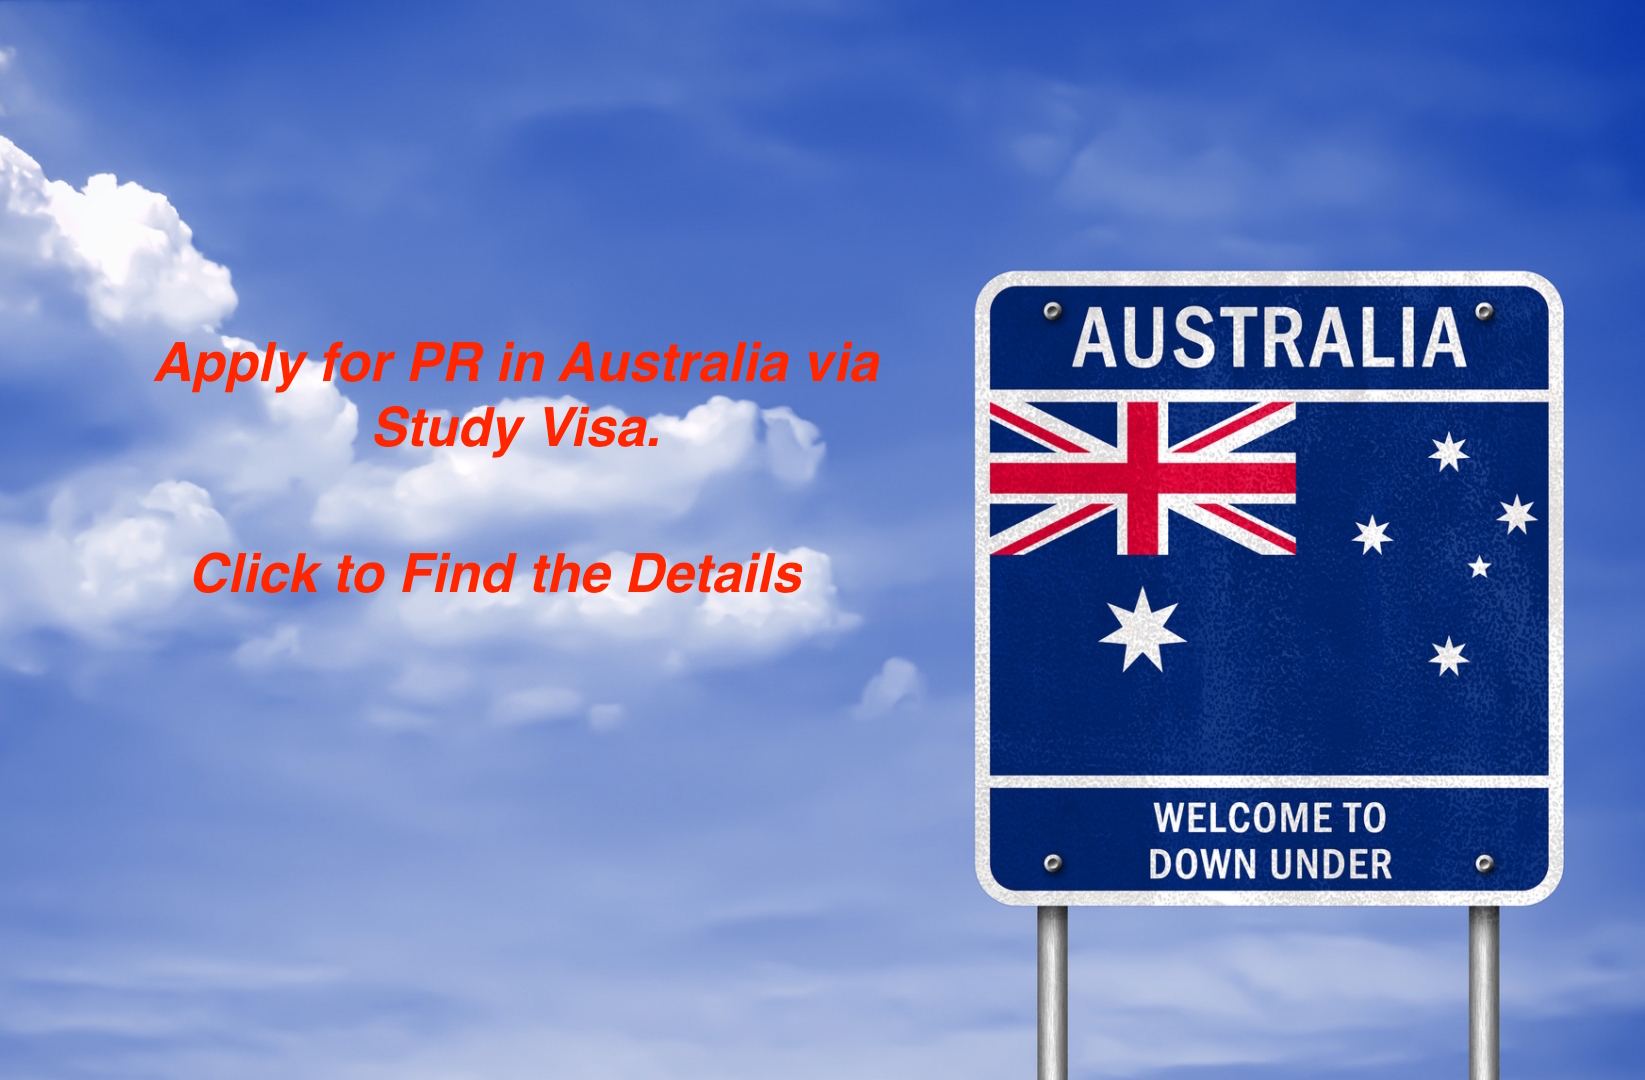 Apply for PR in Australia via Study Visa